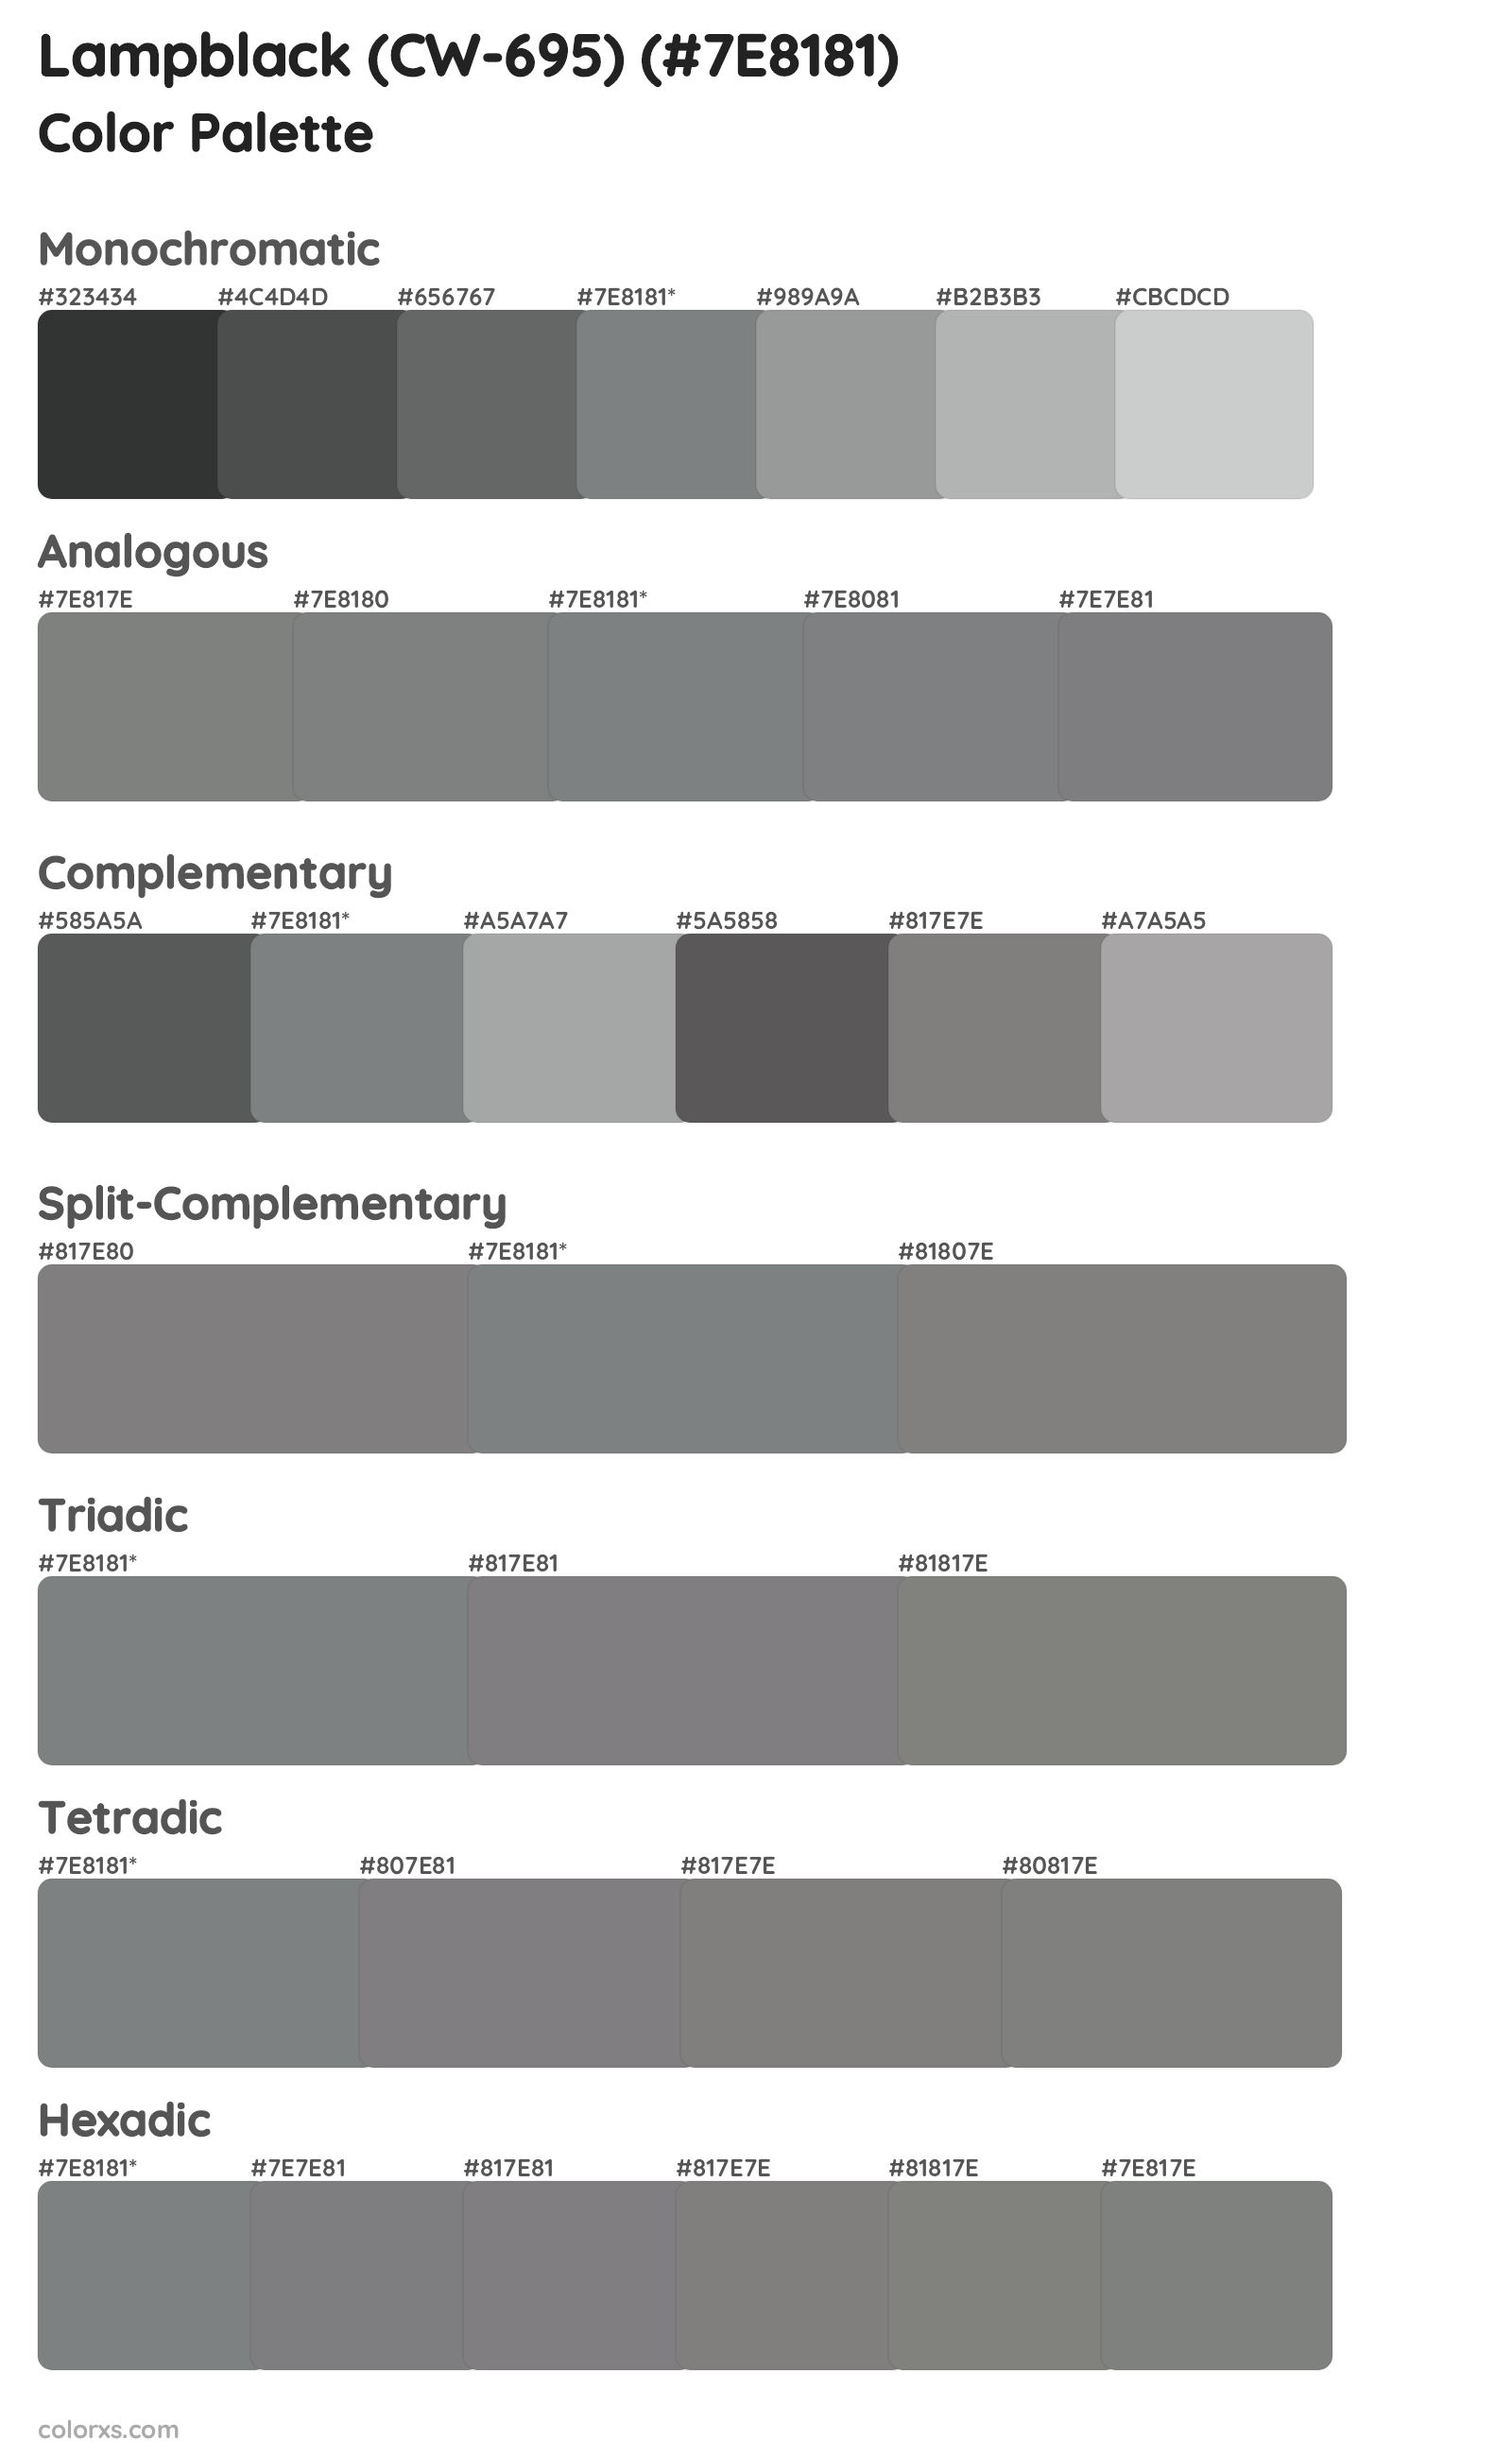 Lampblack (CW-695) Color Scheme Palettes